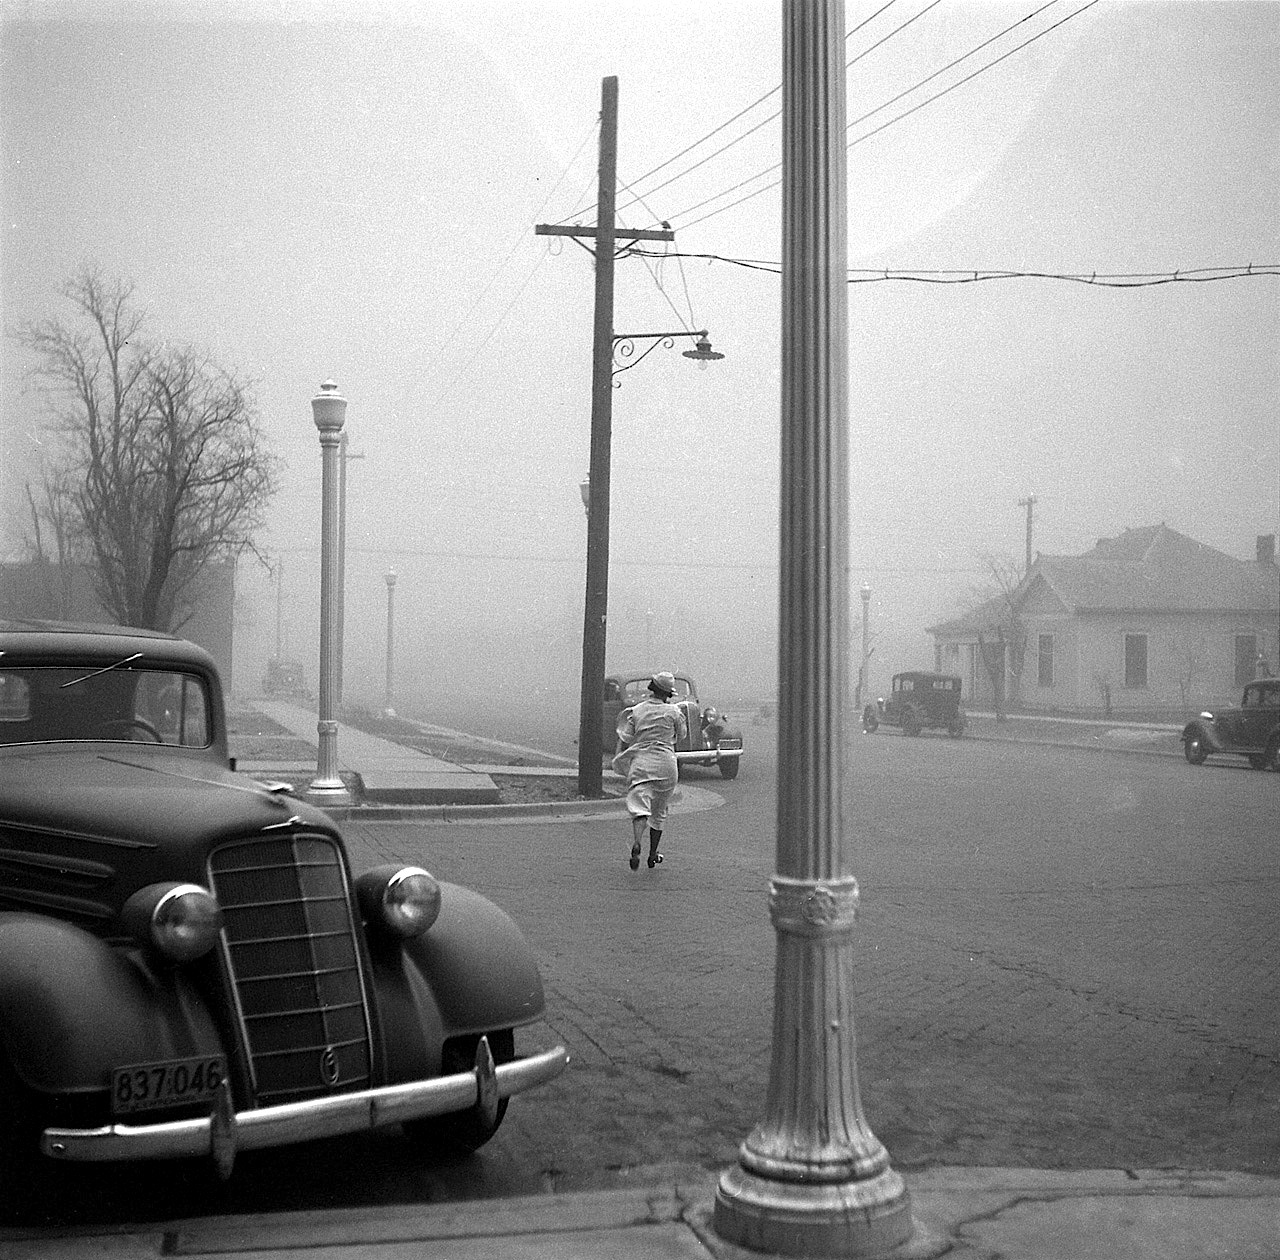 Arthur Rothstein
Dust storm, Amarillo, Texas, 1936